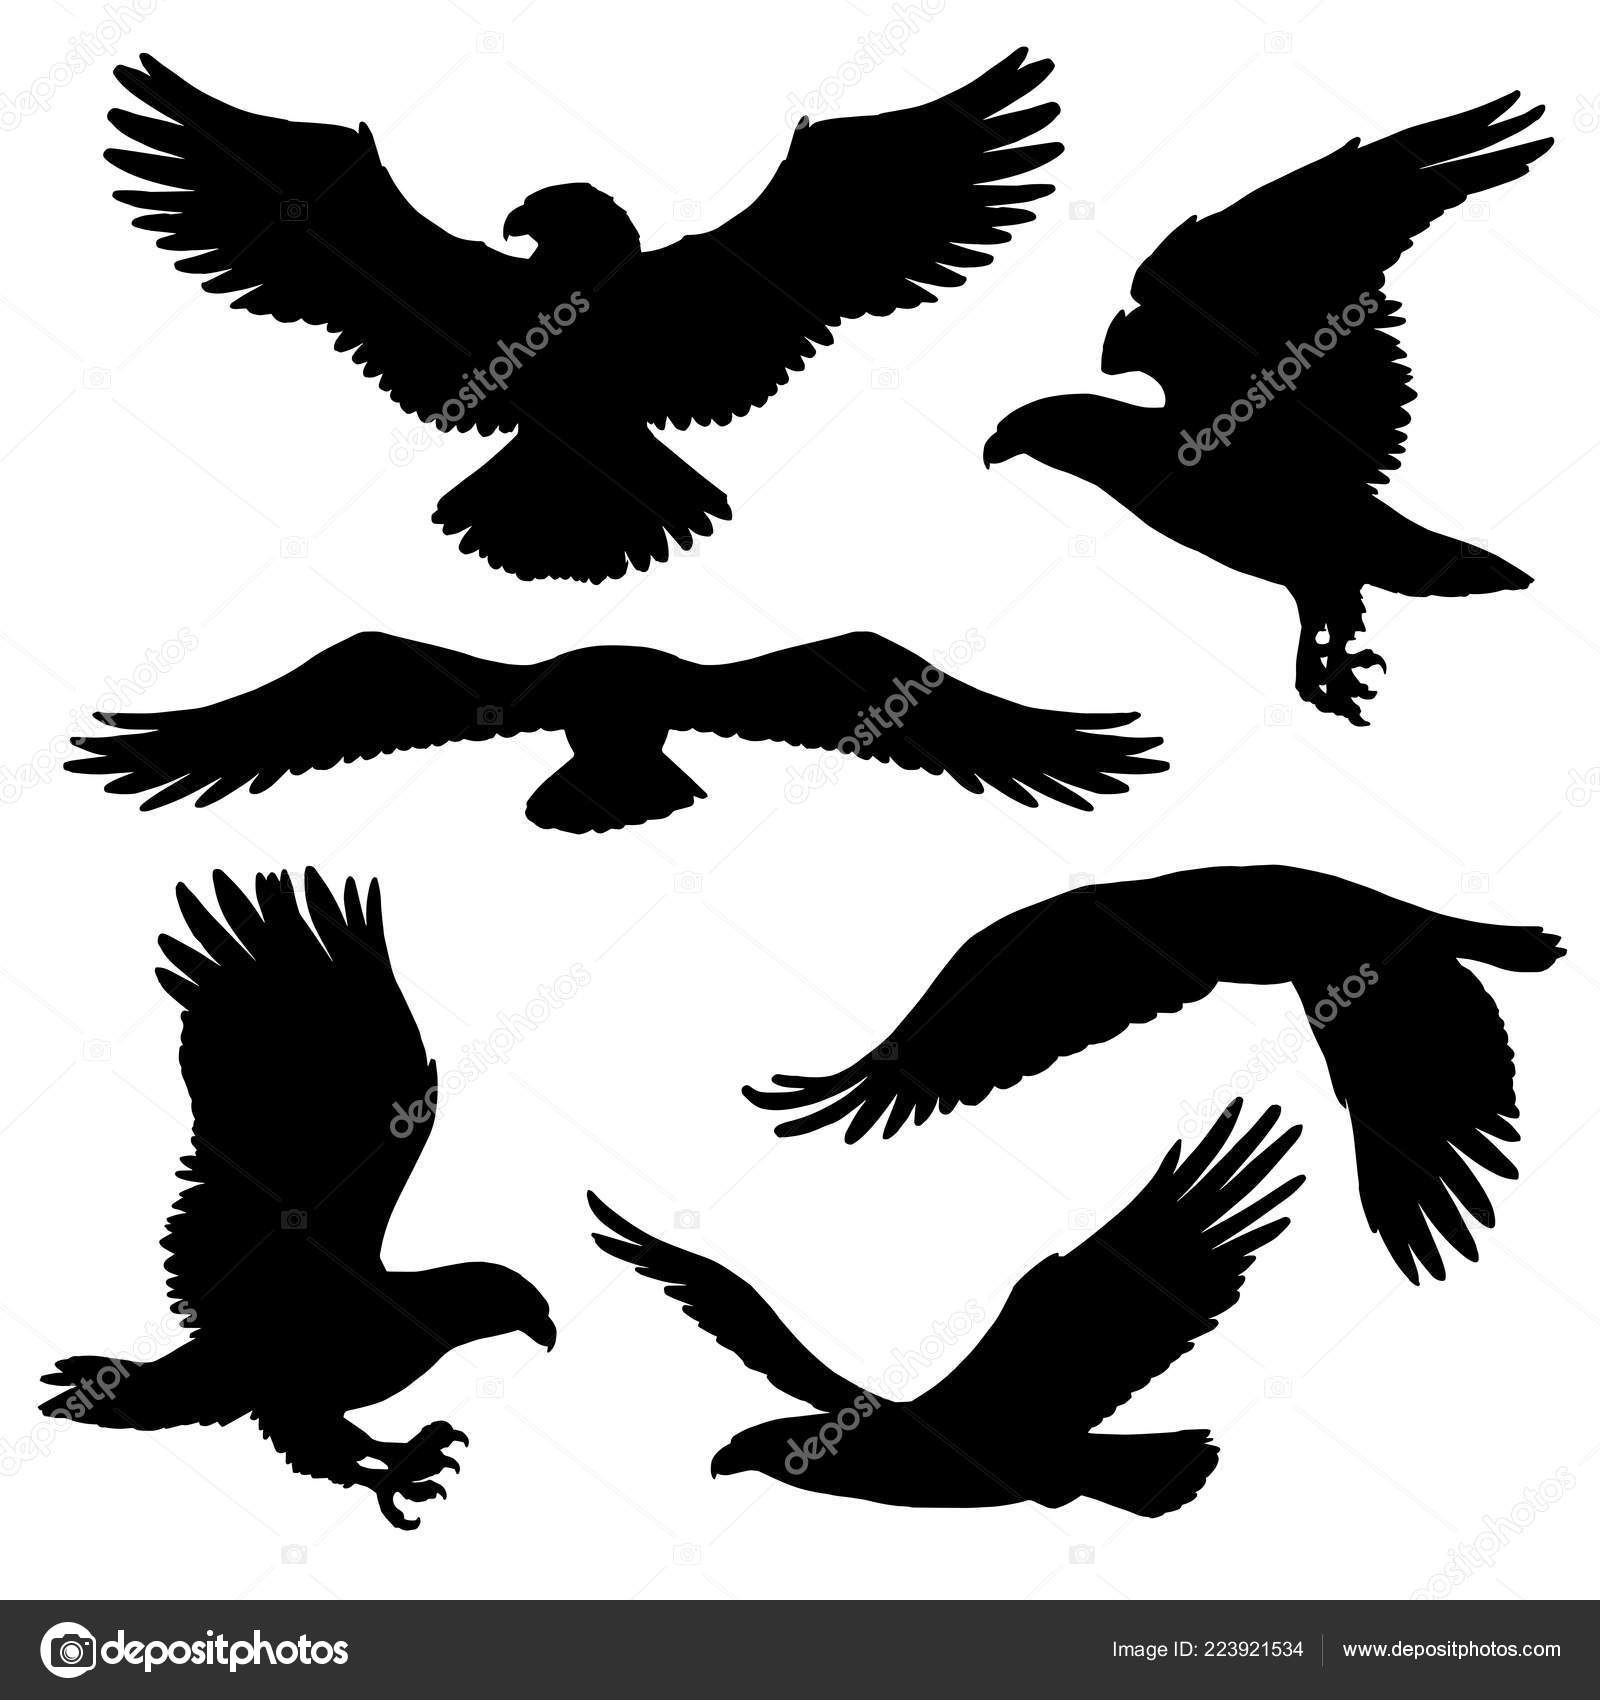 Silueta de águila calva imágenes de stock de arte vectorial | Depositphotos